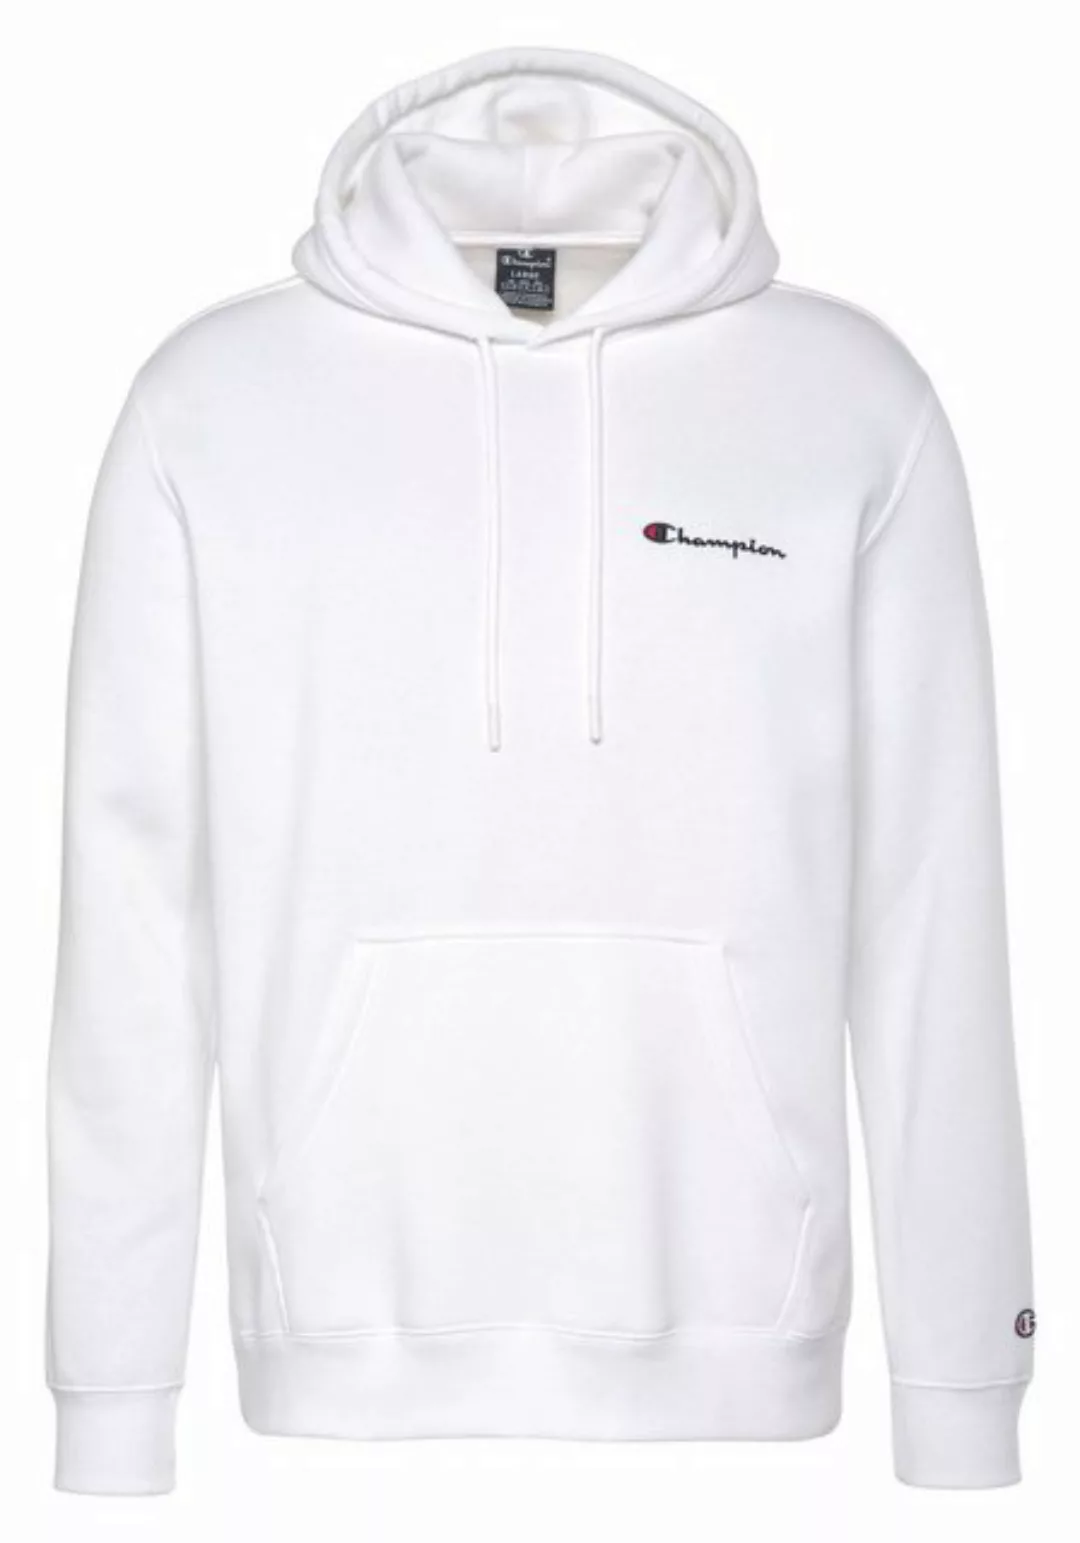 Champion Sweatshirt Champion Herren Kapuzenpullover mit kleinem Logo u günstig online kaufen